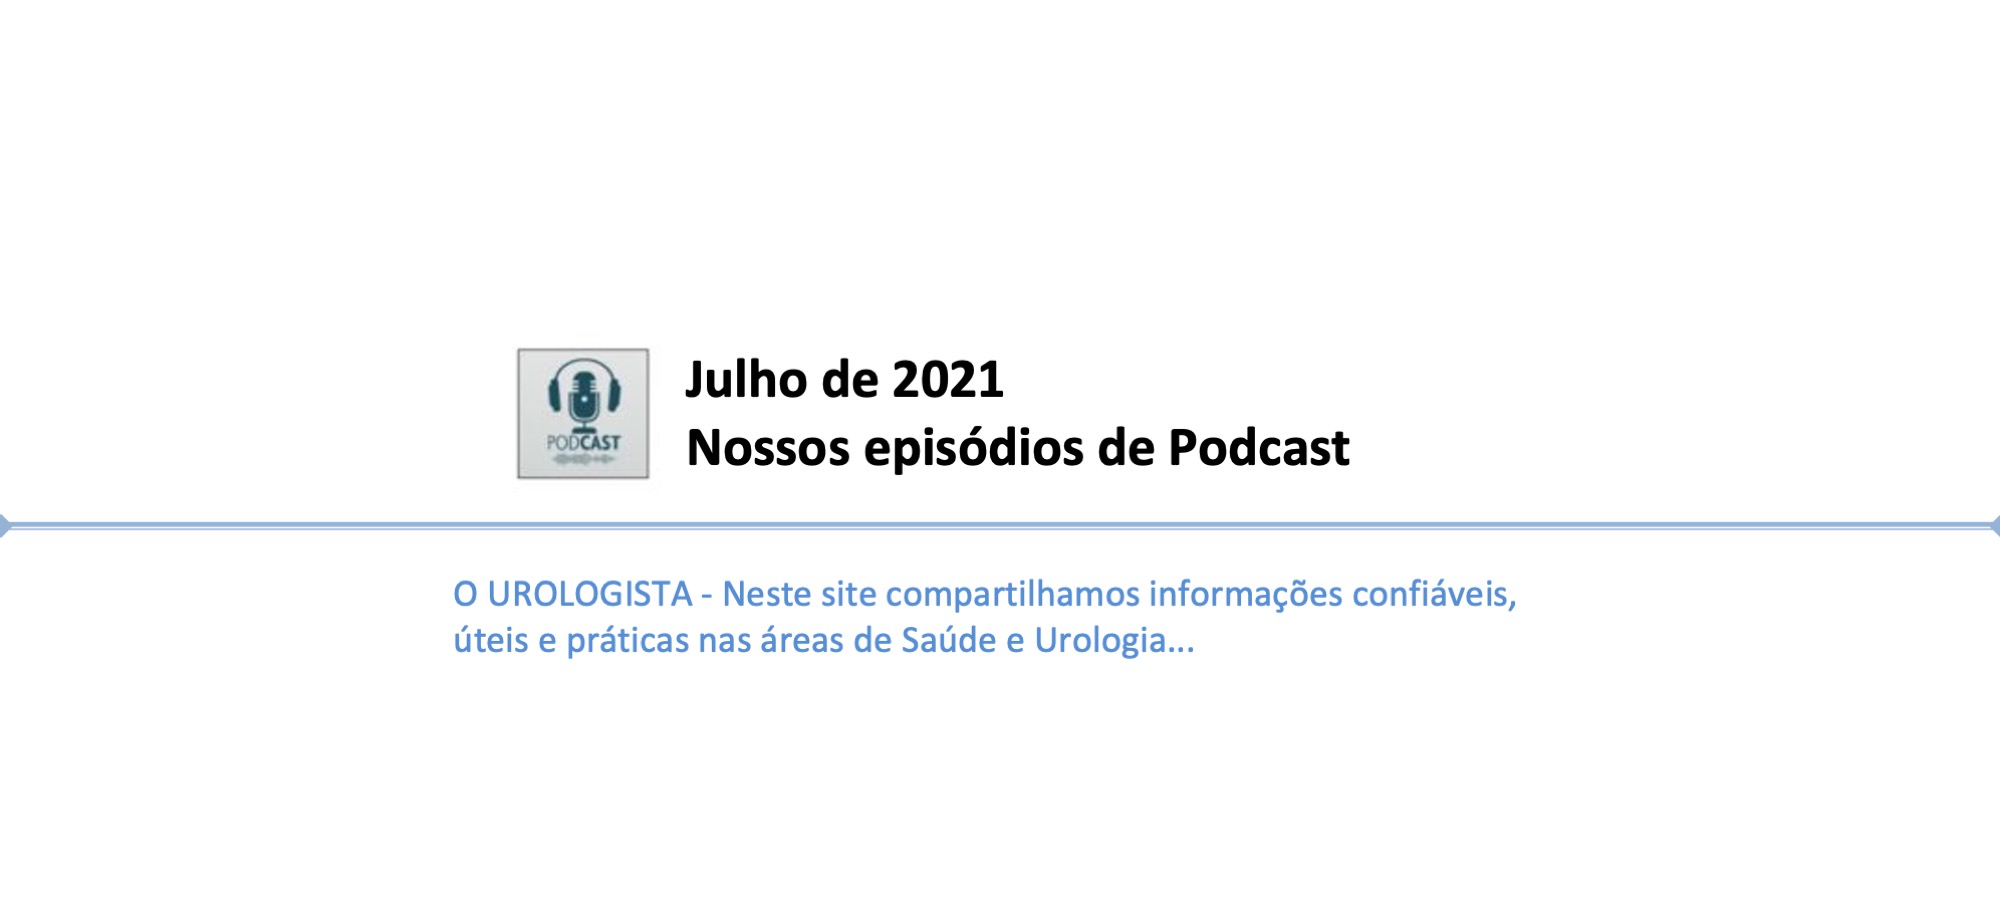 Podcast O Urologista - Julho de 2021